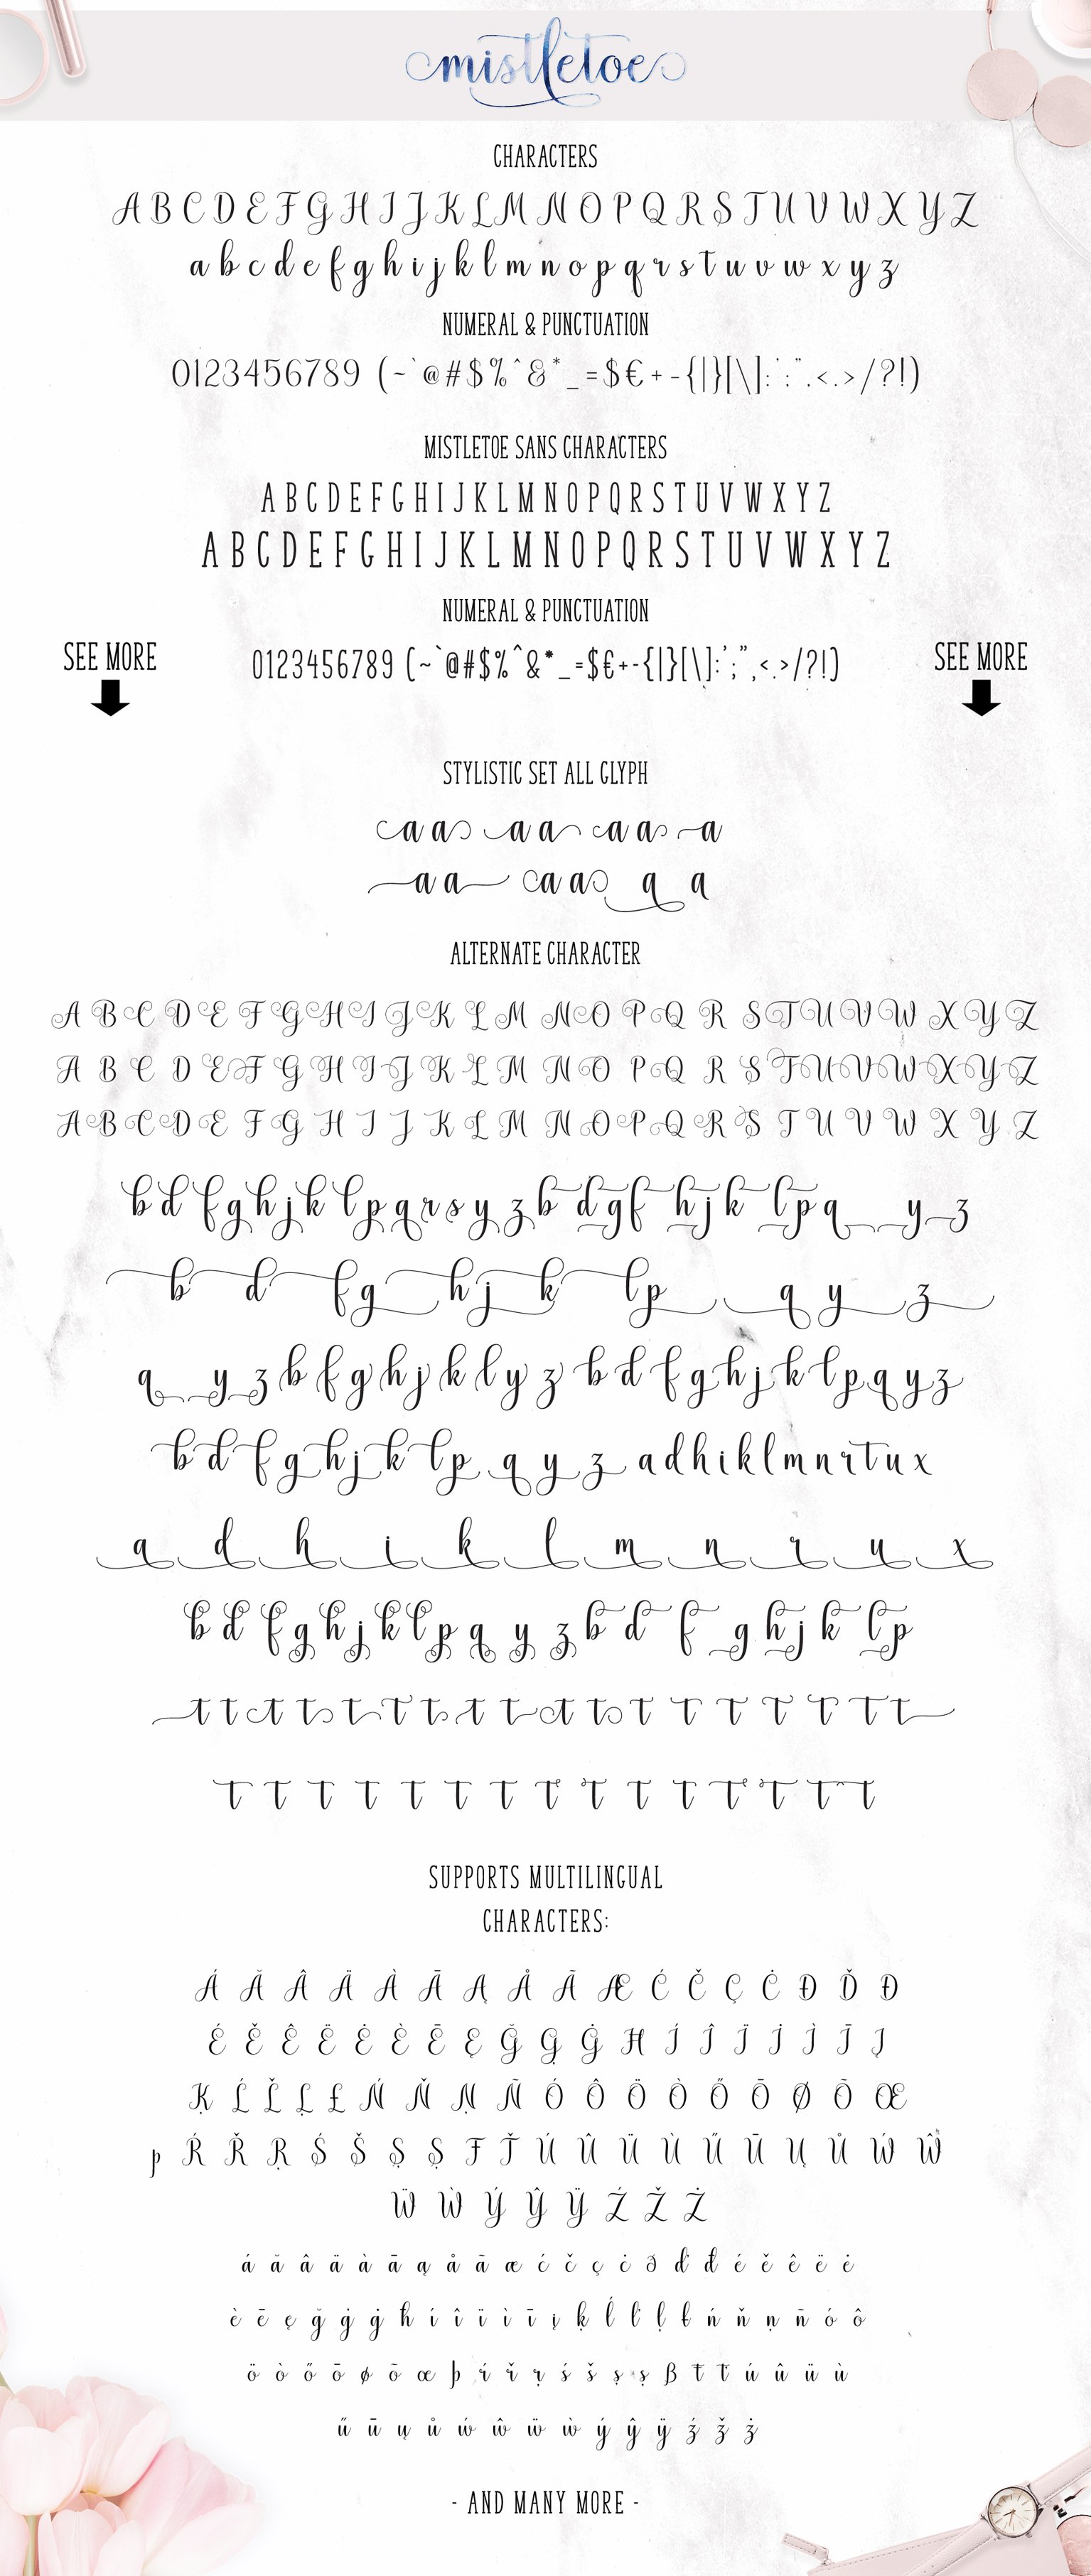 09 mistletoe script 229